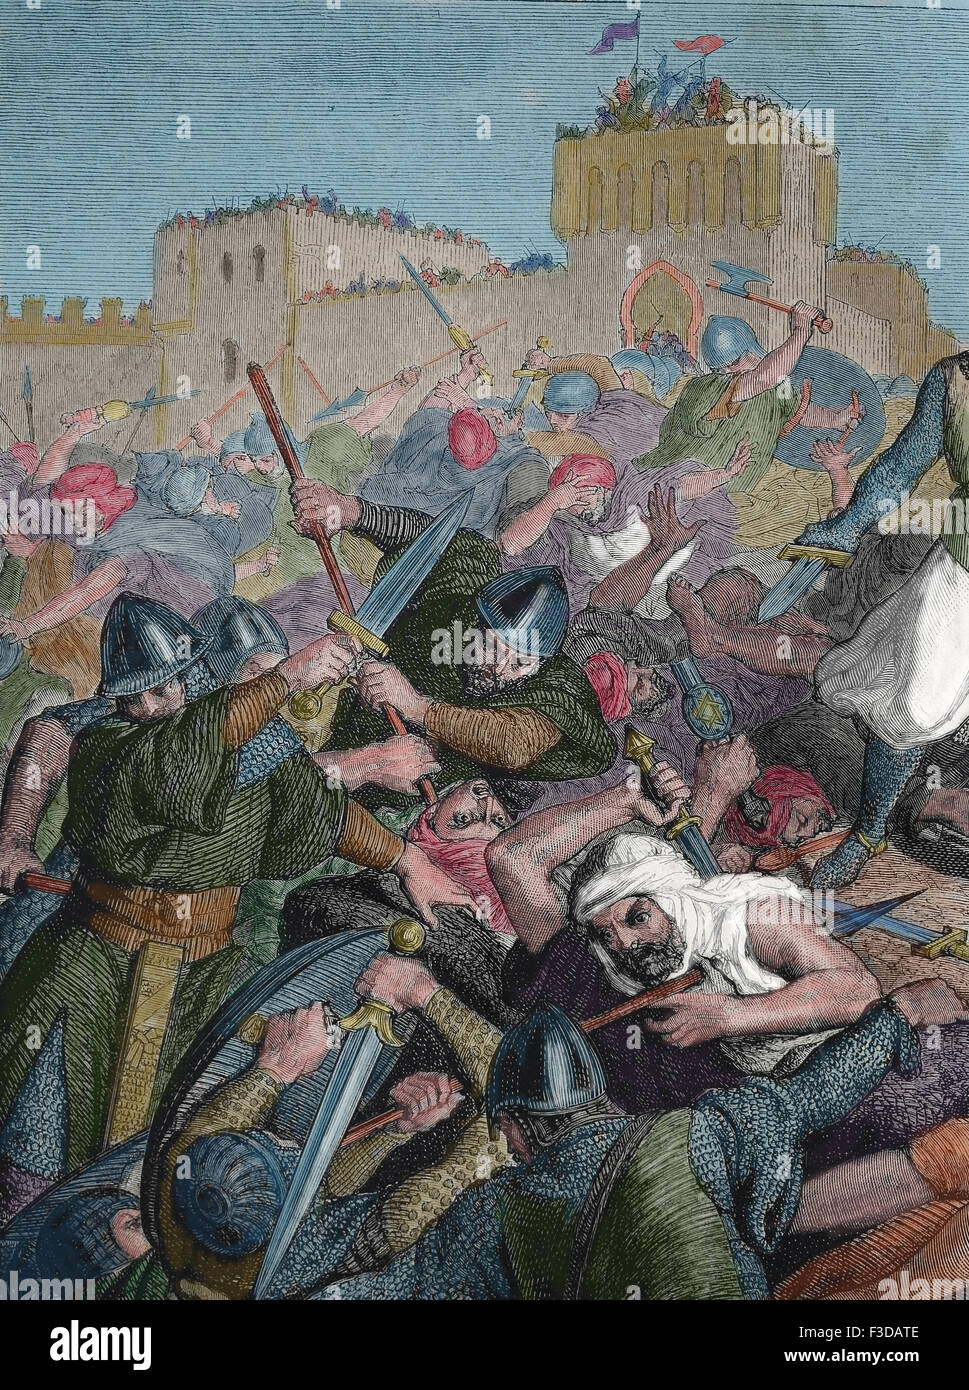 Spanien. Eroberung von Valencia. El Cid (1043-1099). Schlacht von Cuarte, 1094. Christen und maurischen Armee. Gravur. Stockfoto